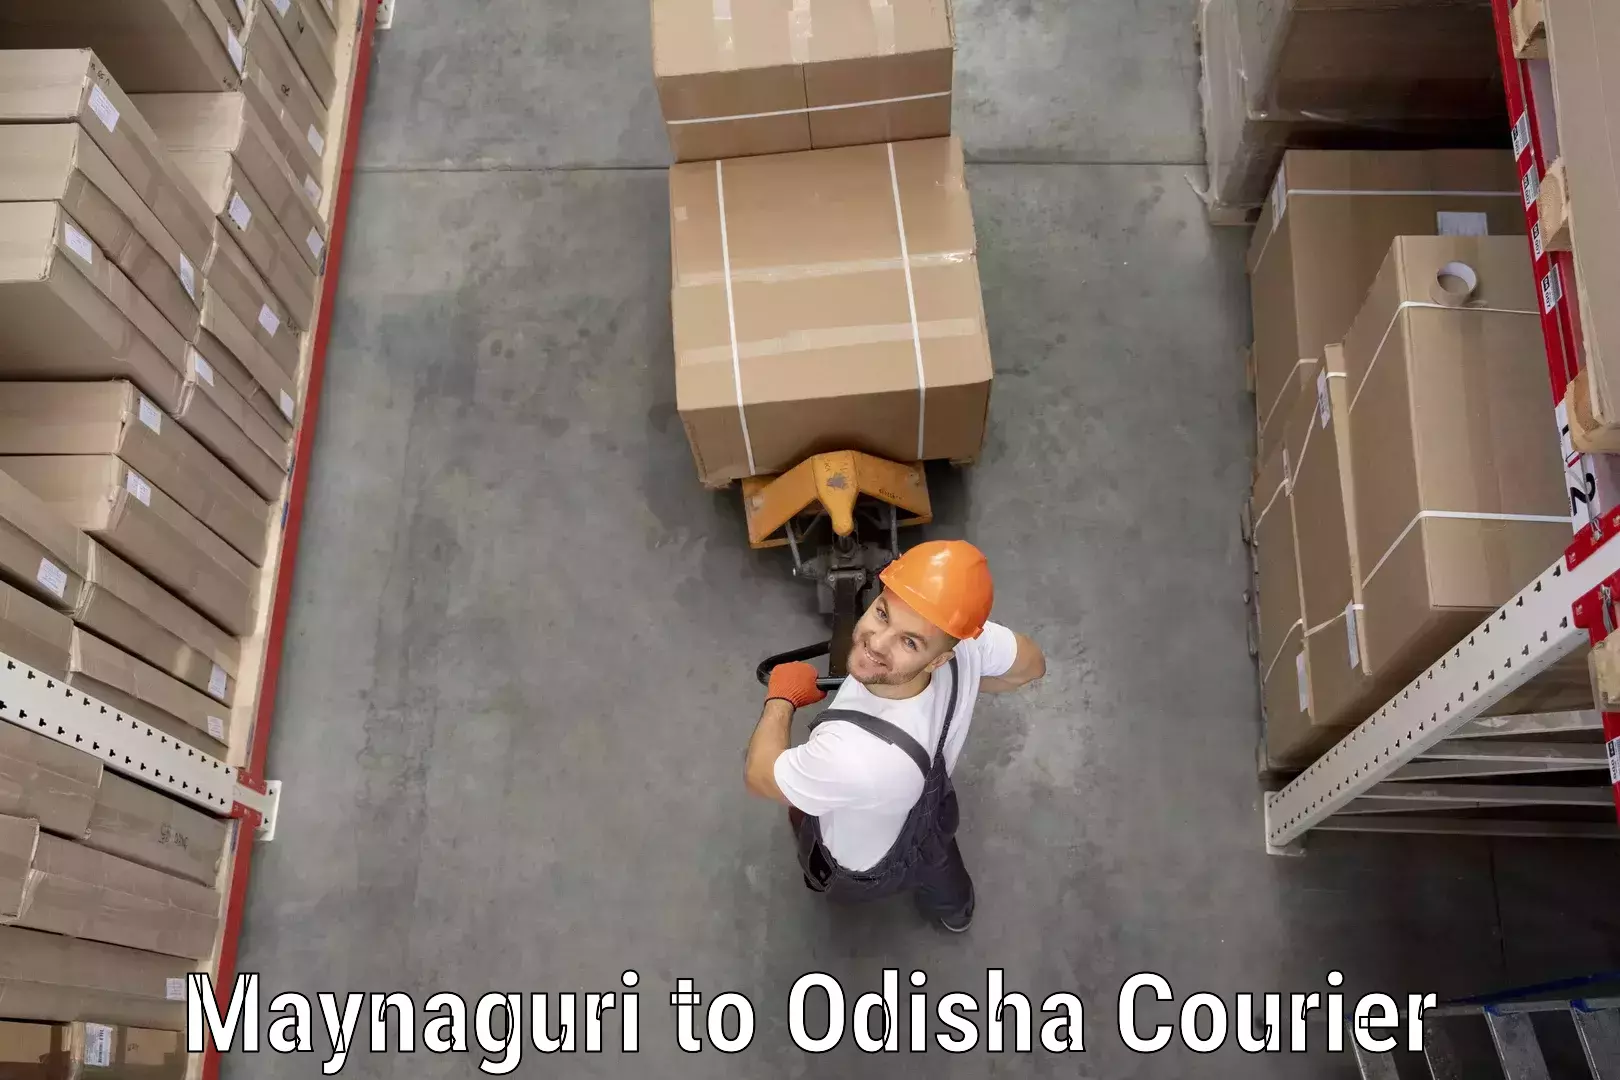 Large-scale shipping solutions Maynaguri to Odisha